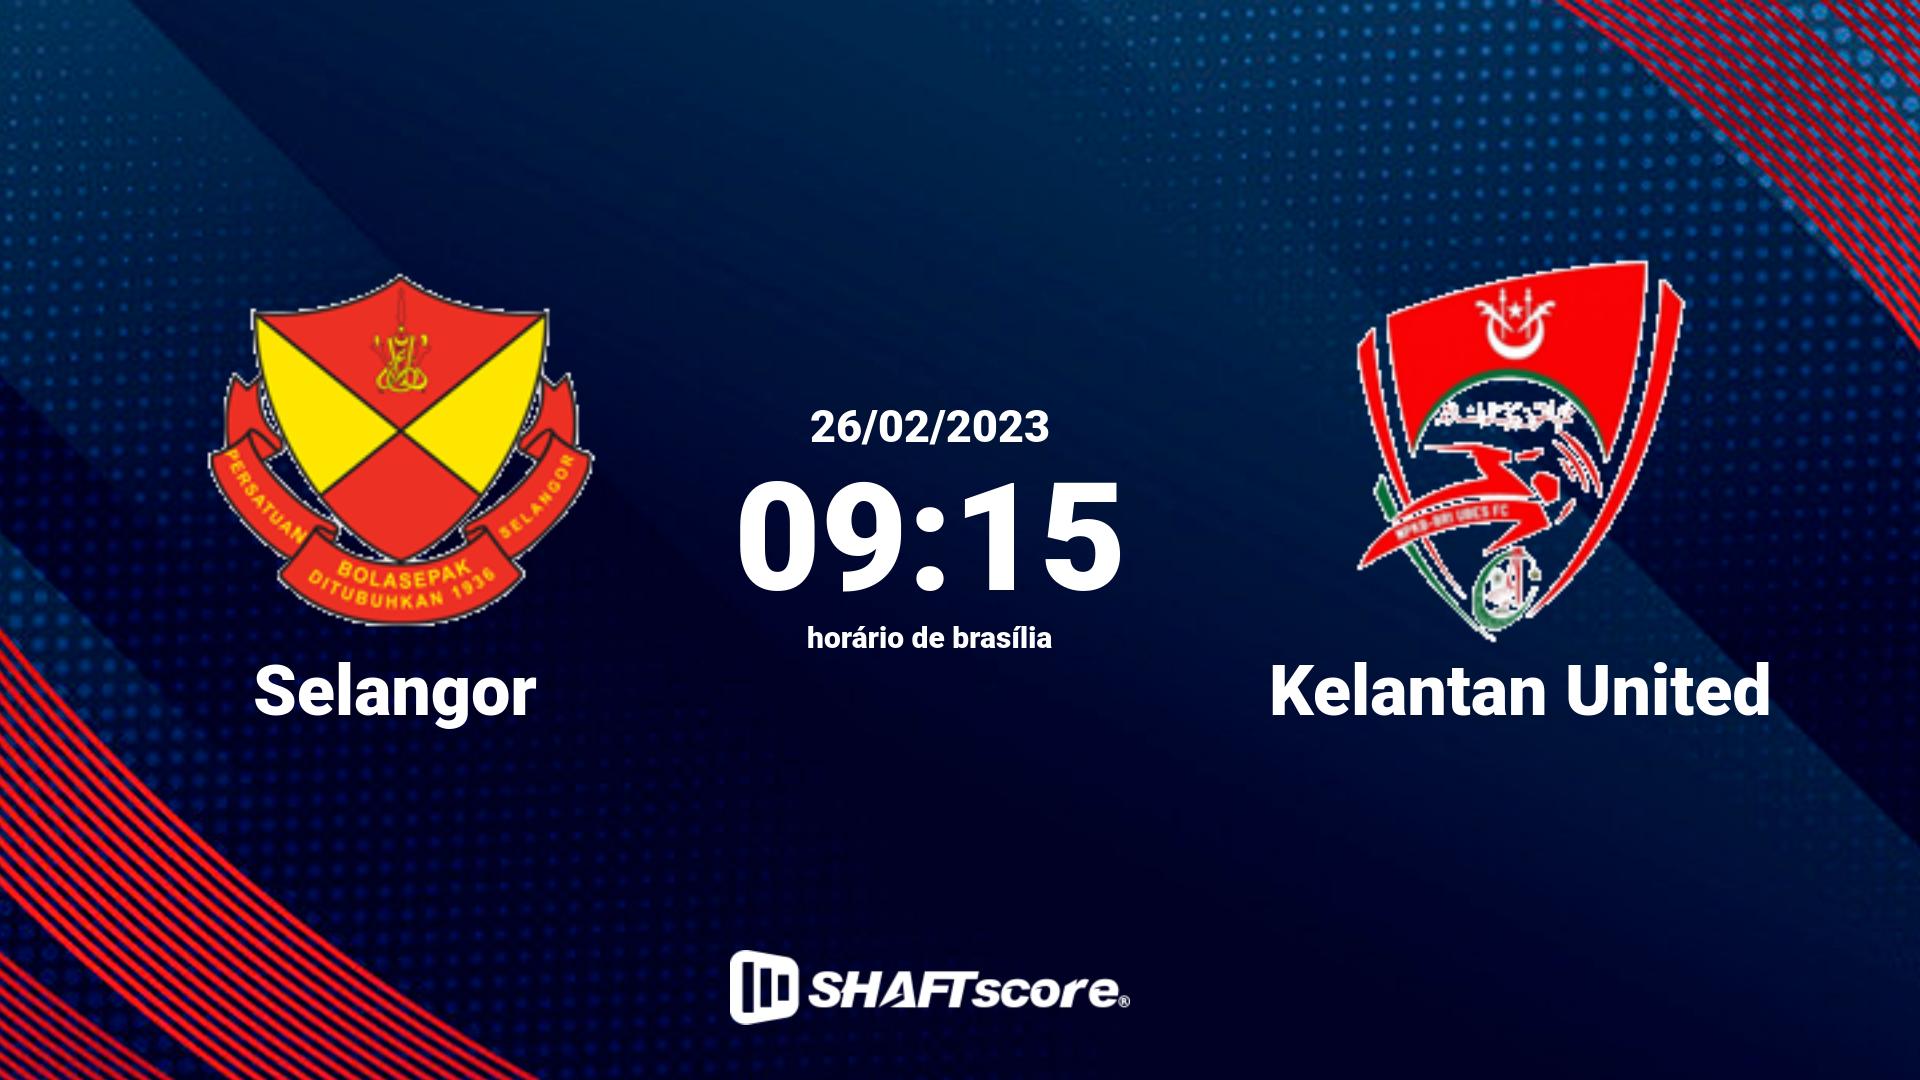 Estatísticas do jogo Selangor vs Kelantan United 26.02 09:15